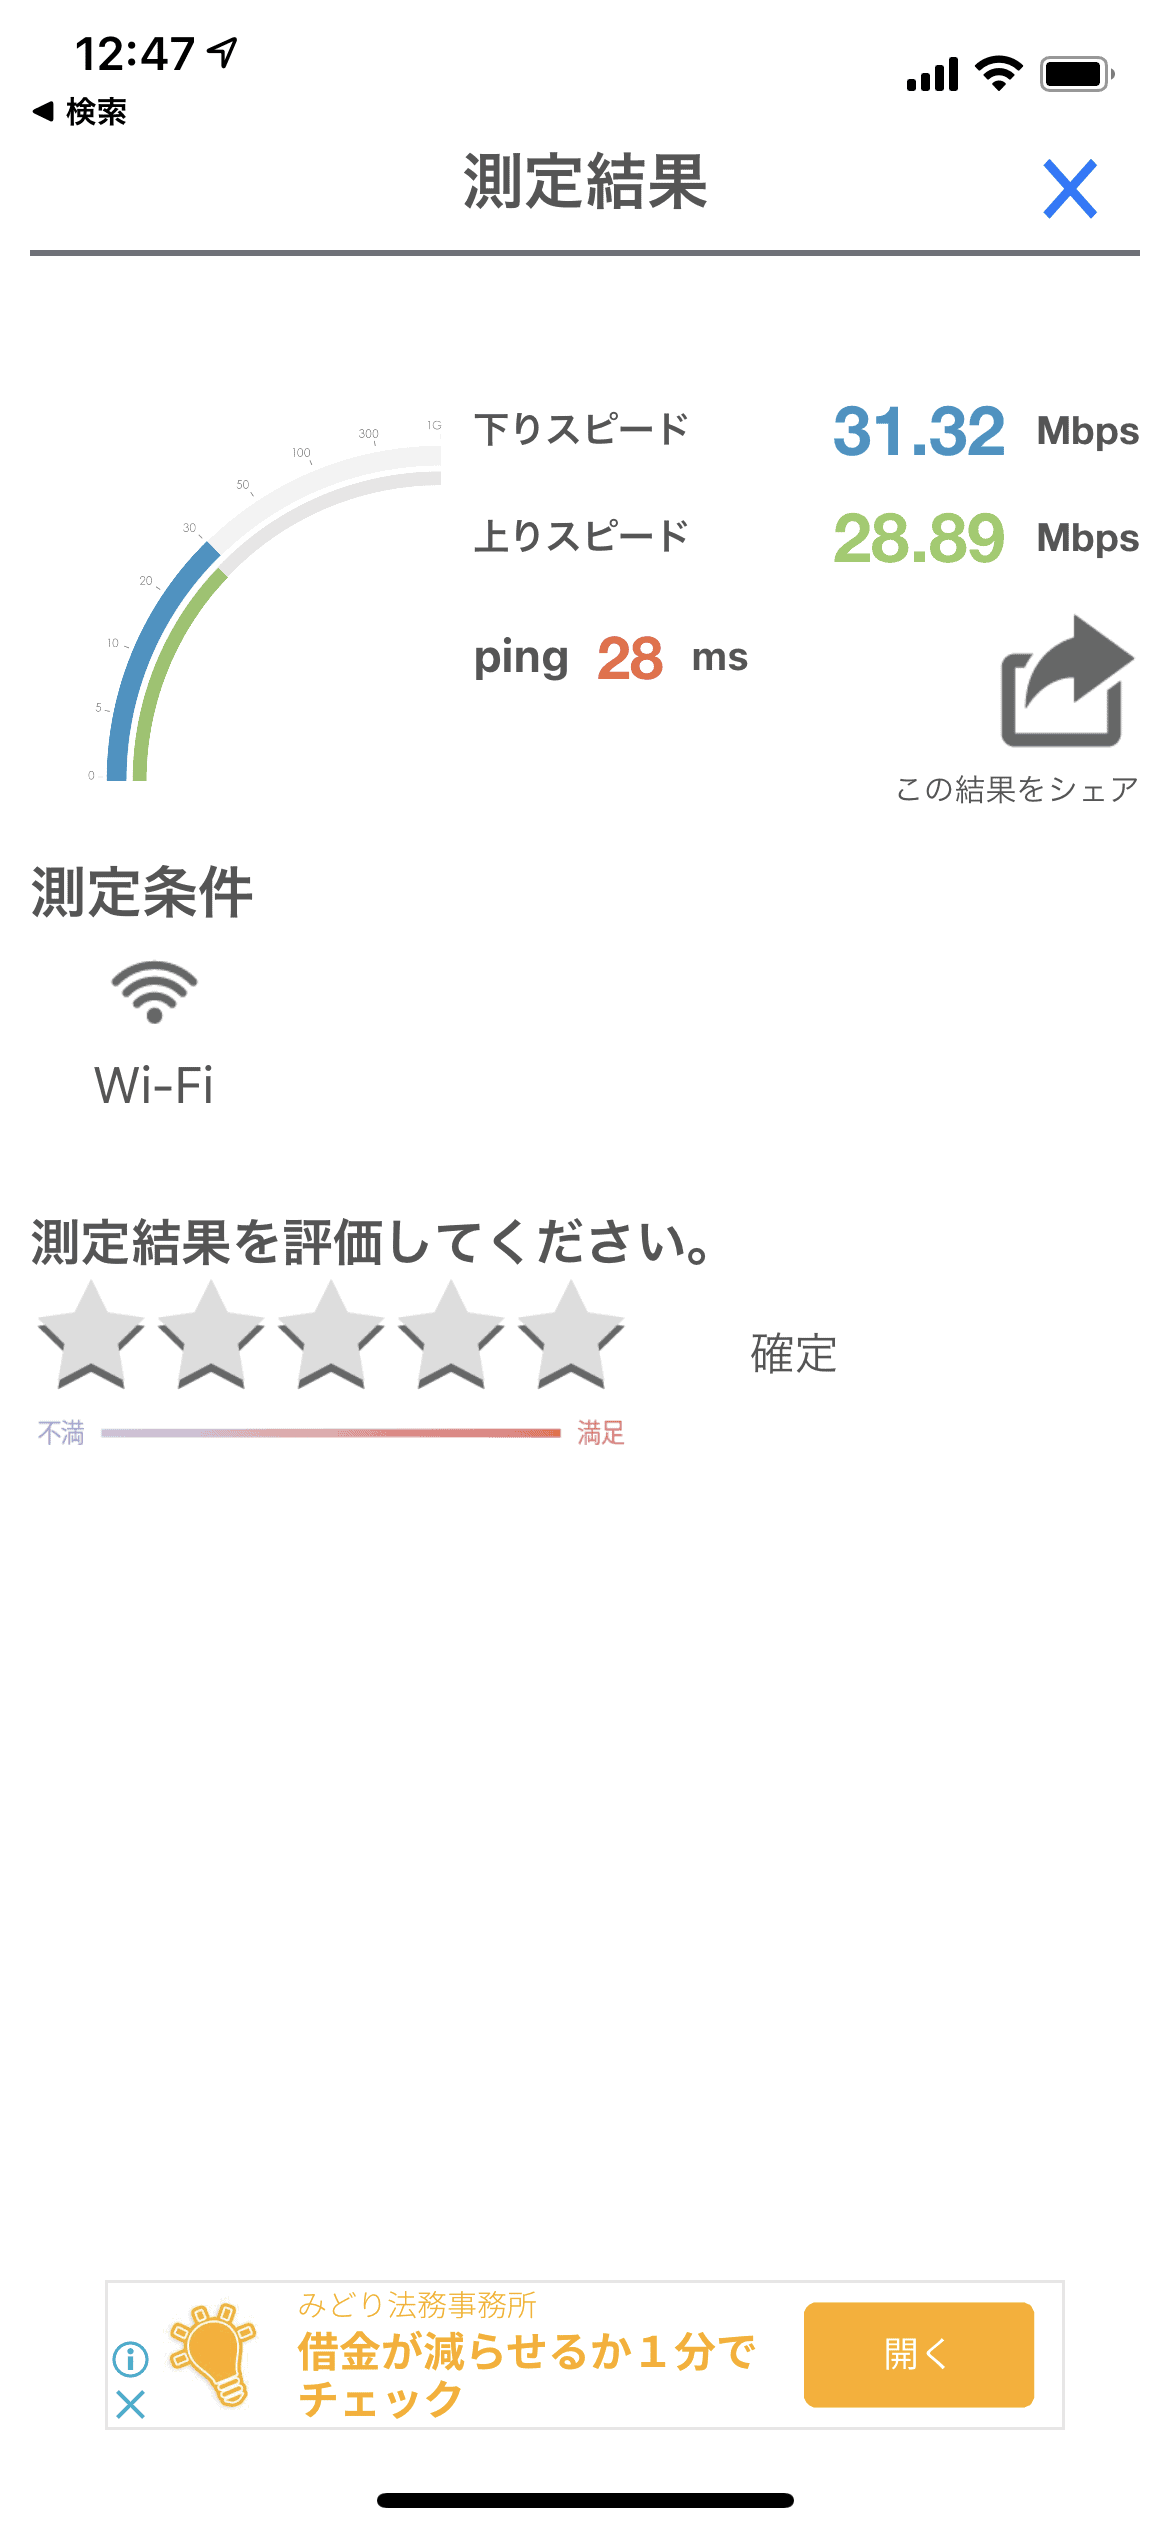 AiR-WiFiのU3の速度